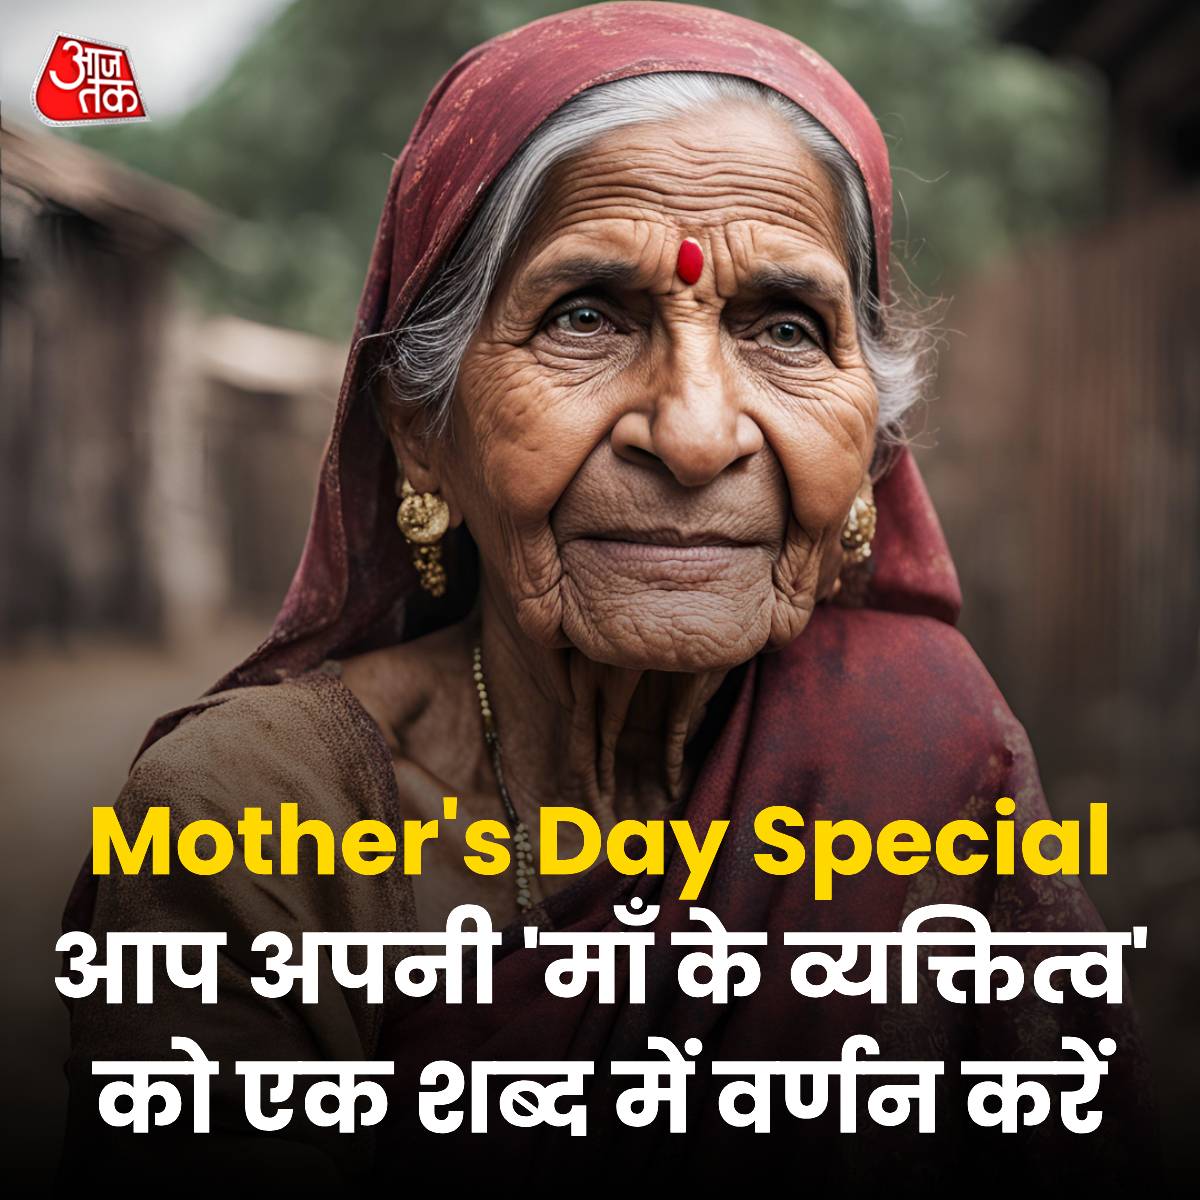 #MothersDaySpecial | आप अपनी 'माँ के व्यक्तित्व' को एक शब्द में वर्णन करें

#ATYourSpace #Mothersday #TalkToUs